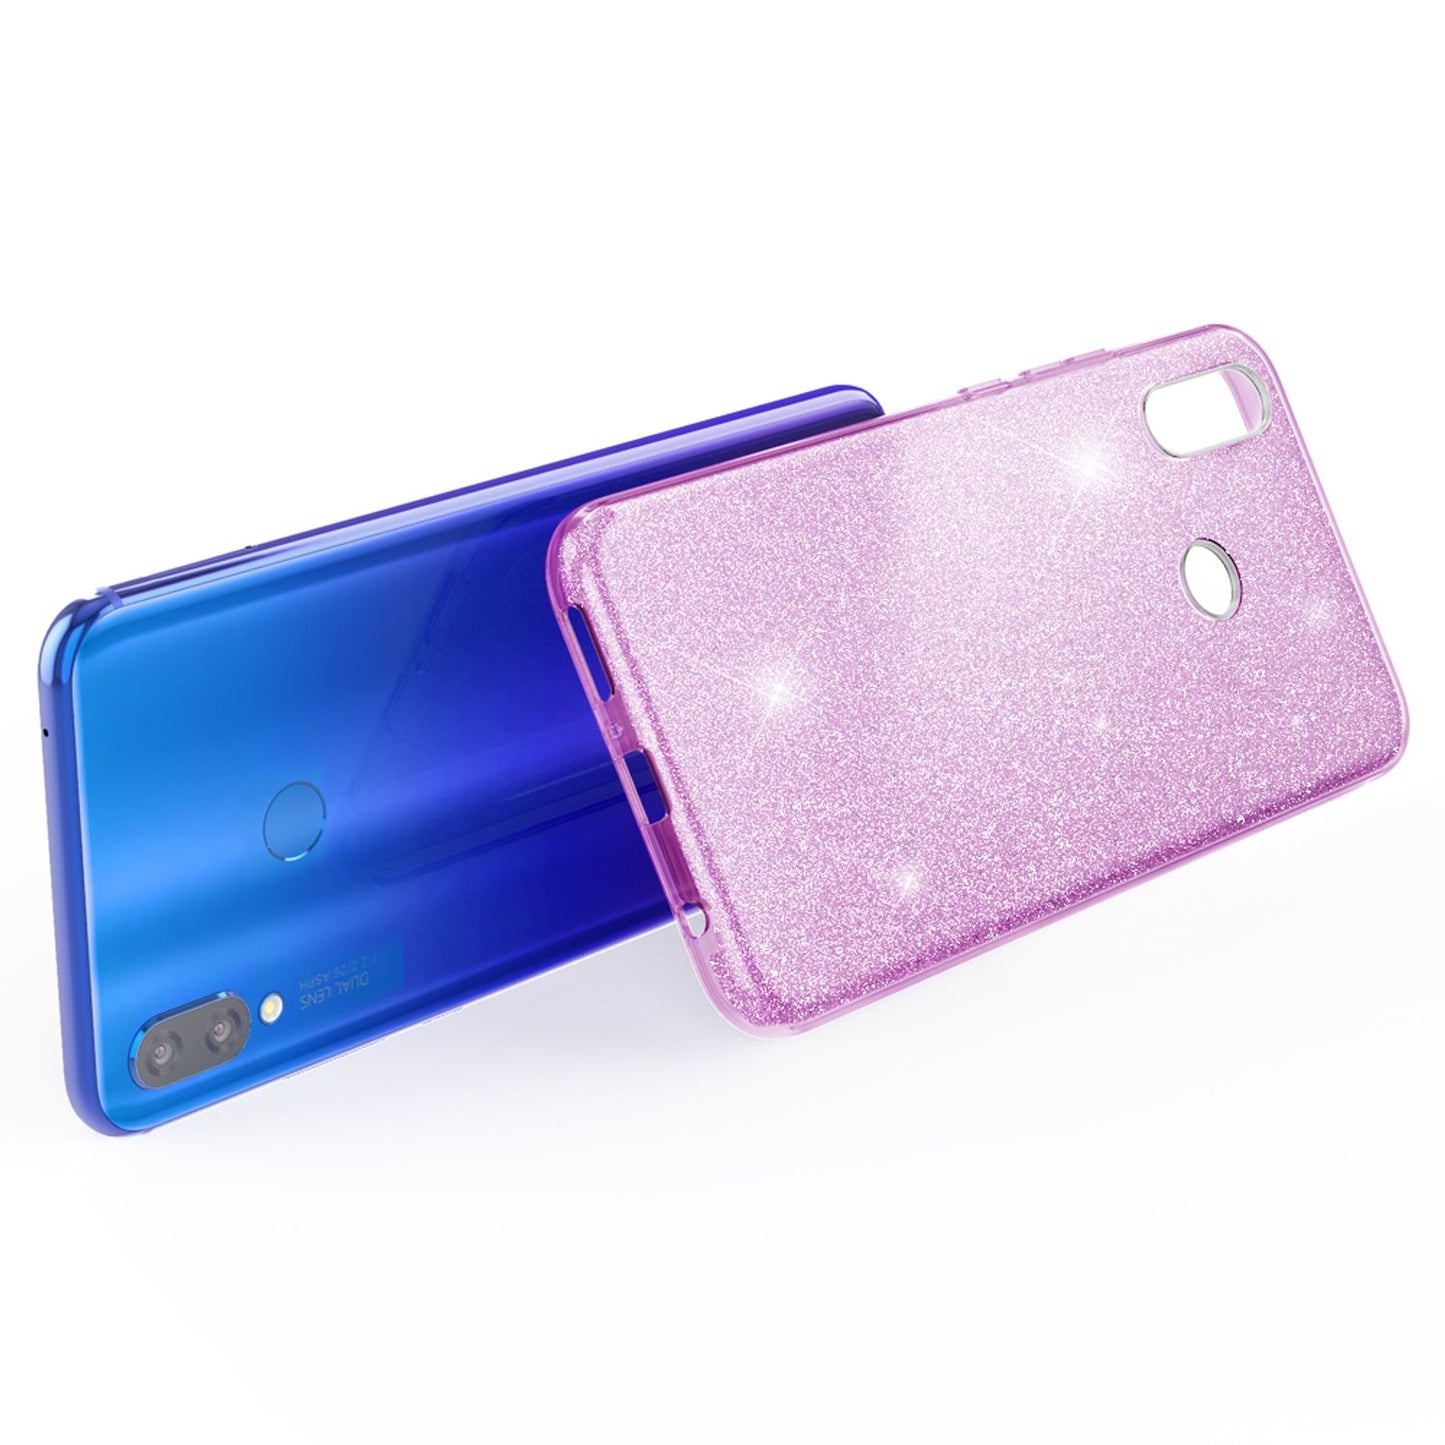 NALIA Glitzer Hülle für mit Huawei P smart+ 2018, Glitter Case Handy Cover Bling